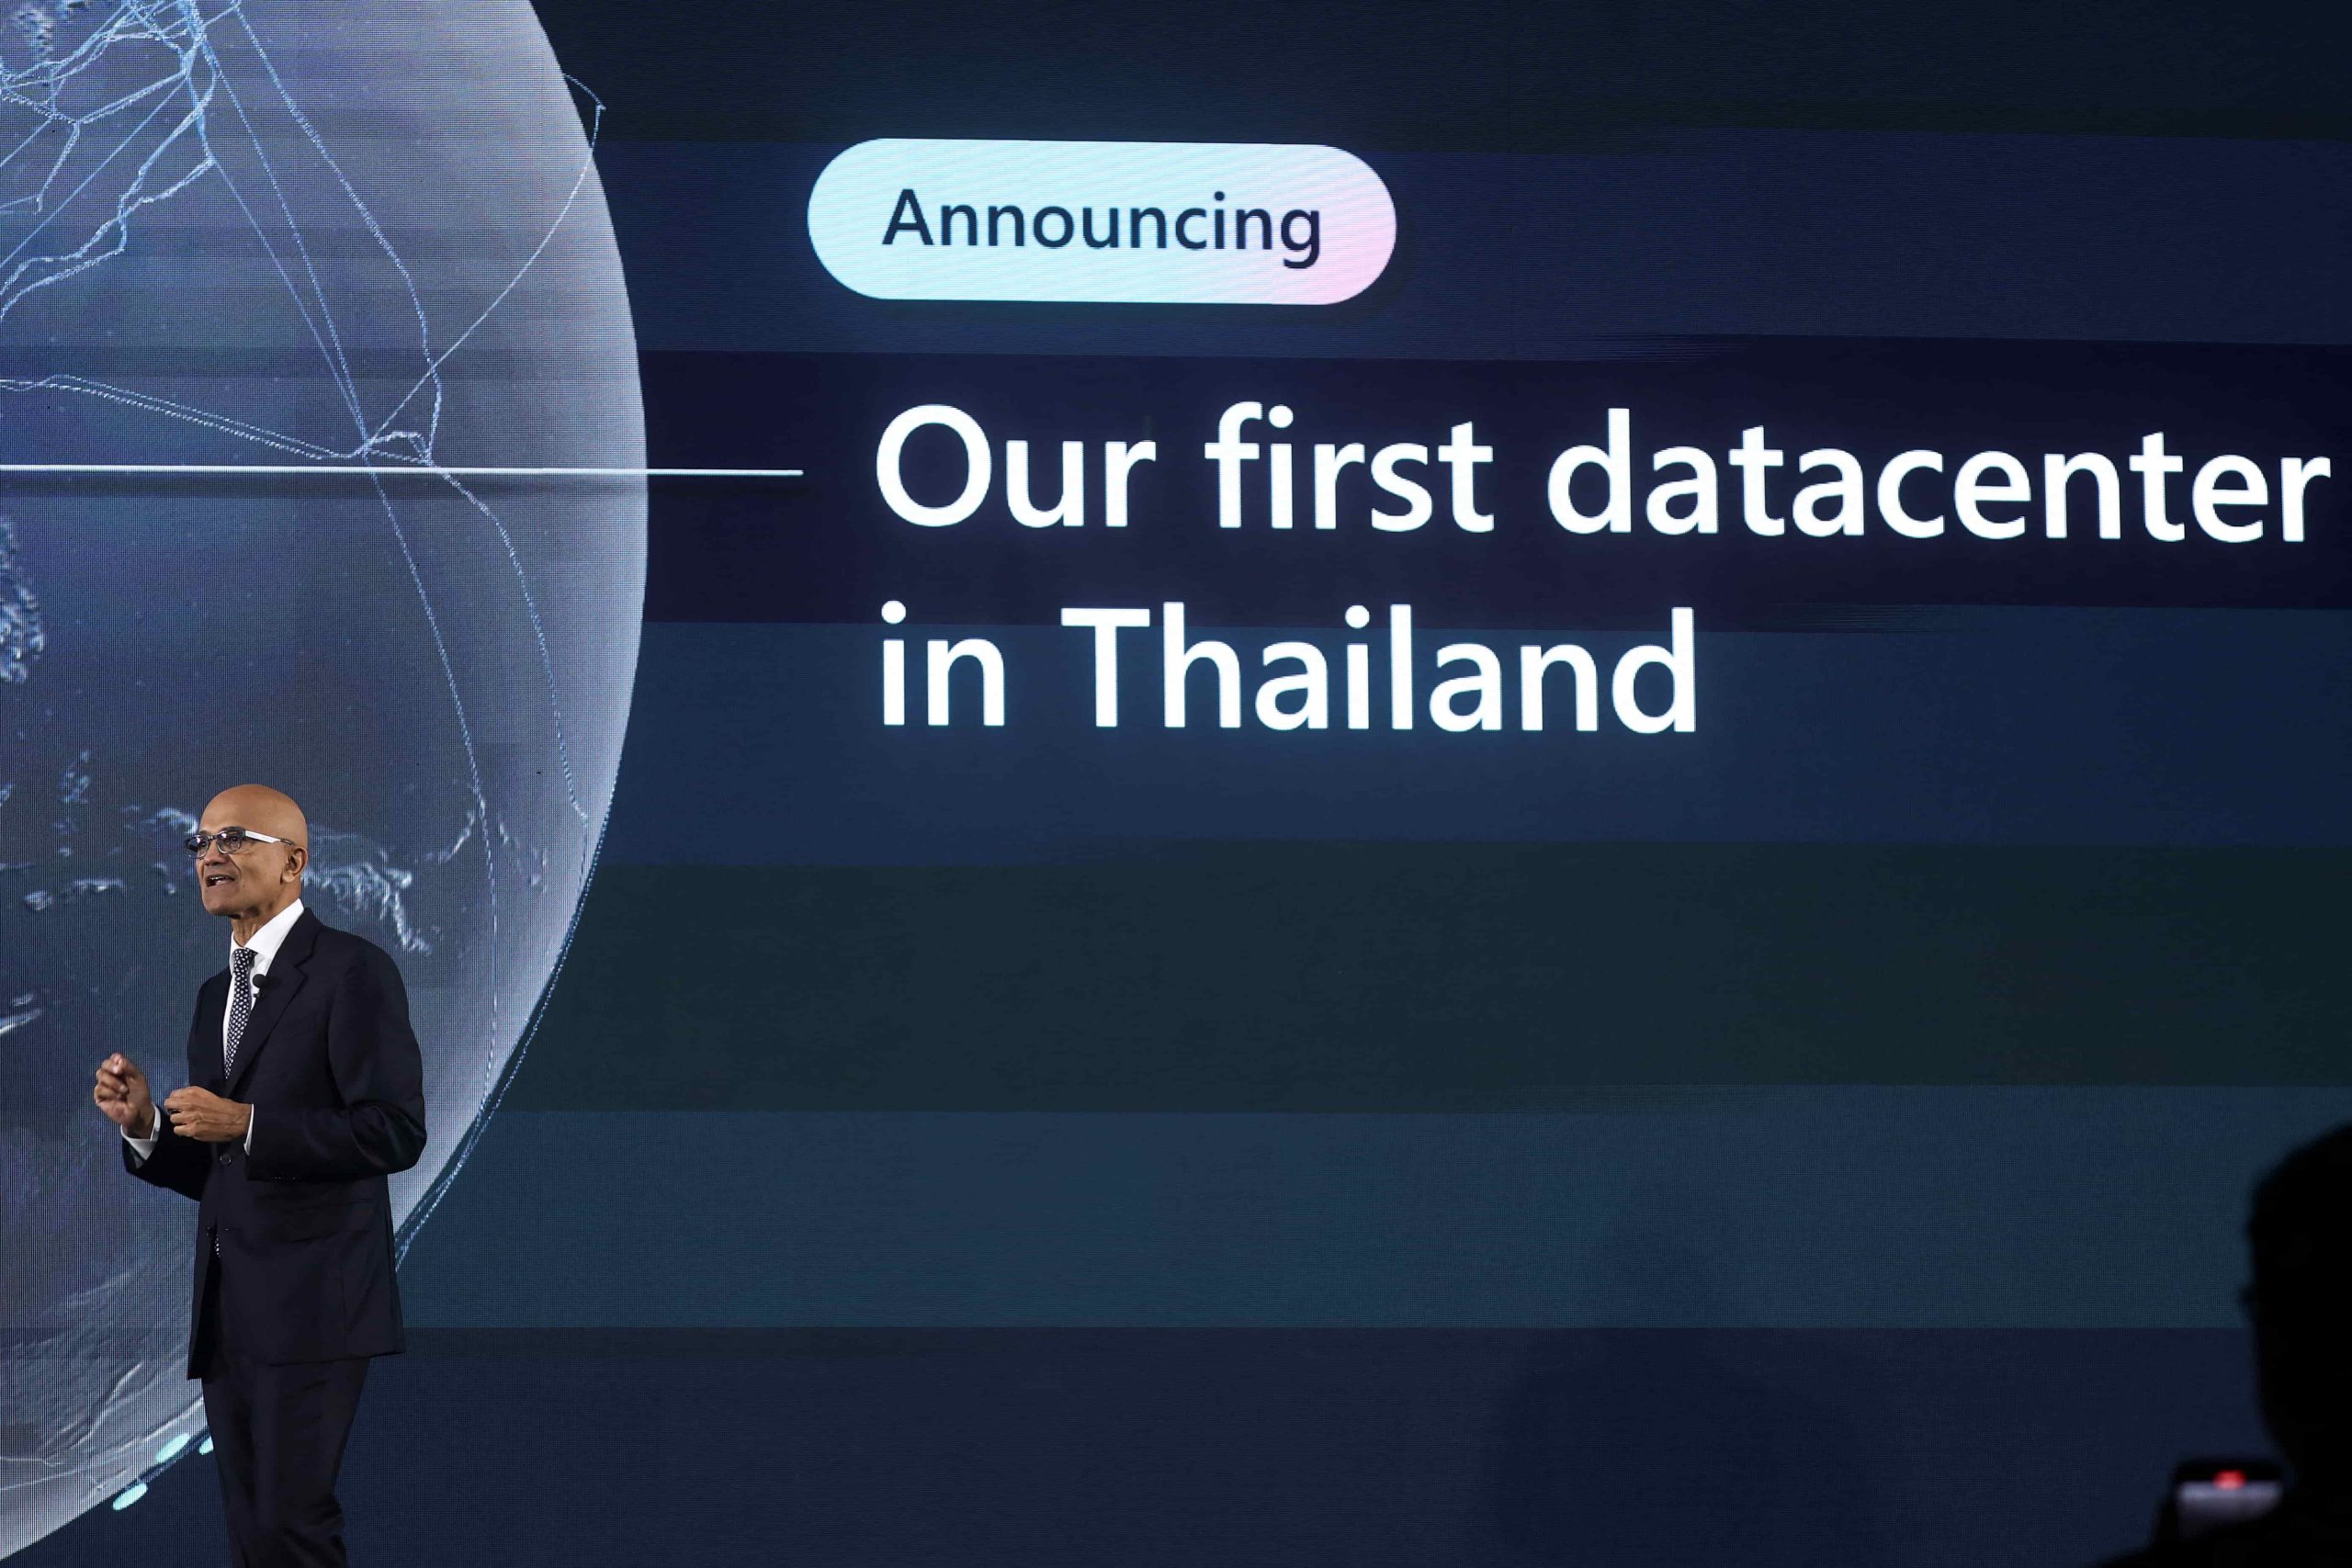 微软首个区域数据中心落户泰国  泰国用户可全面使用Azure